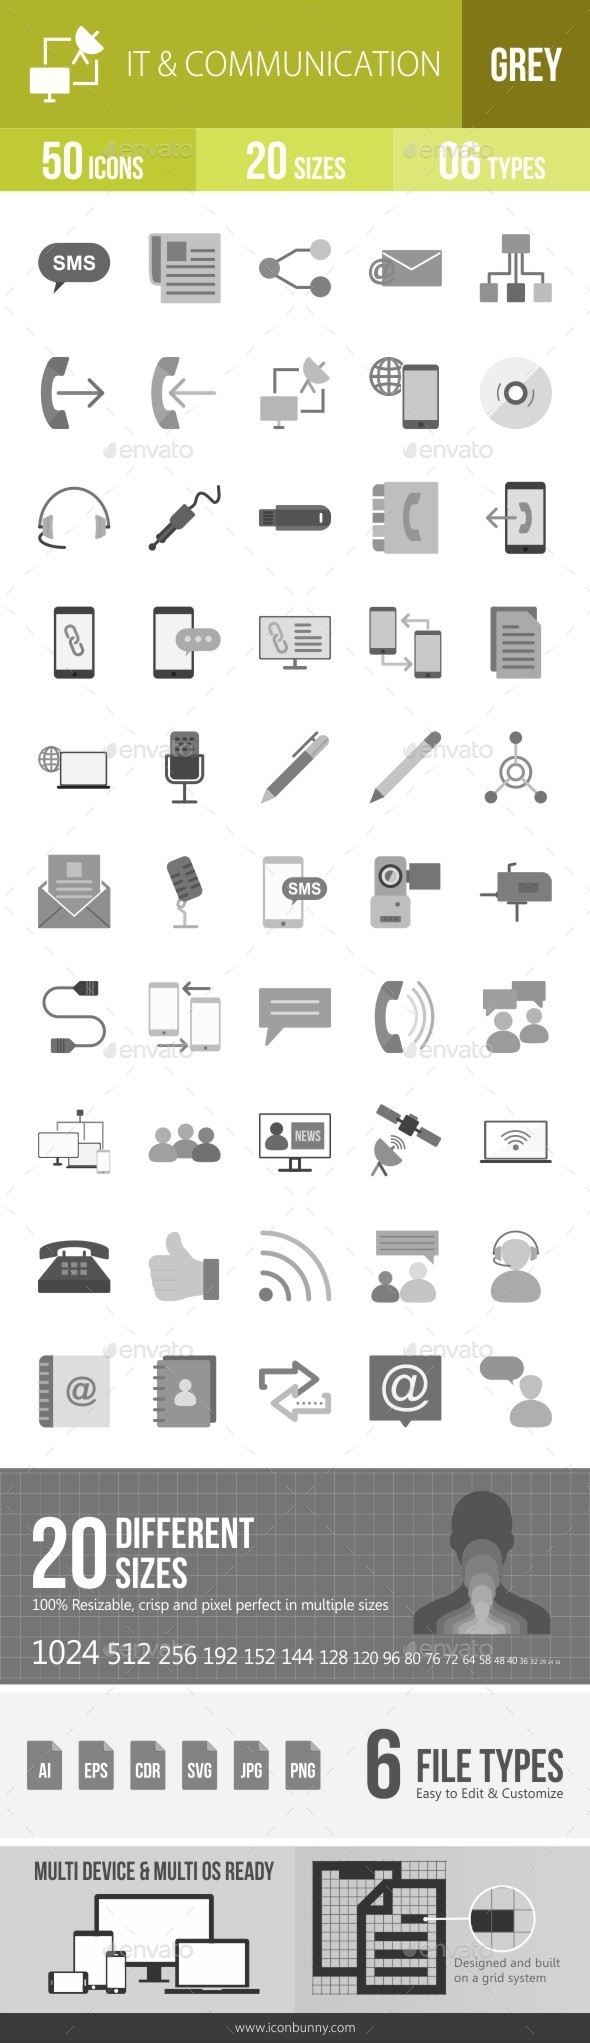 IT & Communication Greyscale Icons